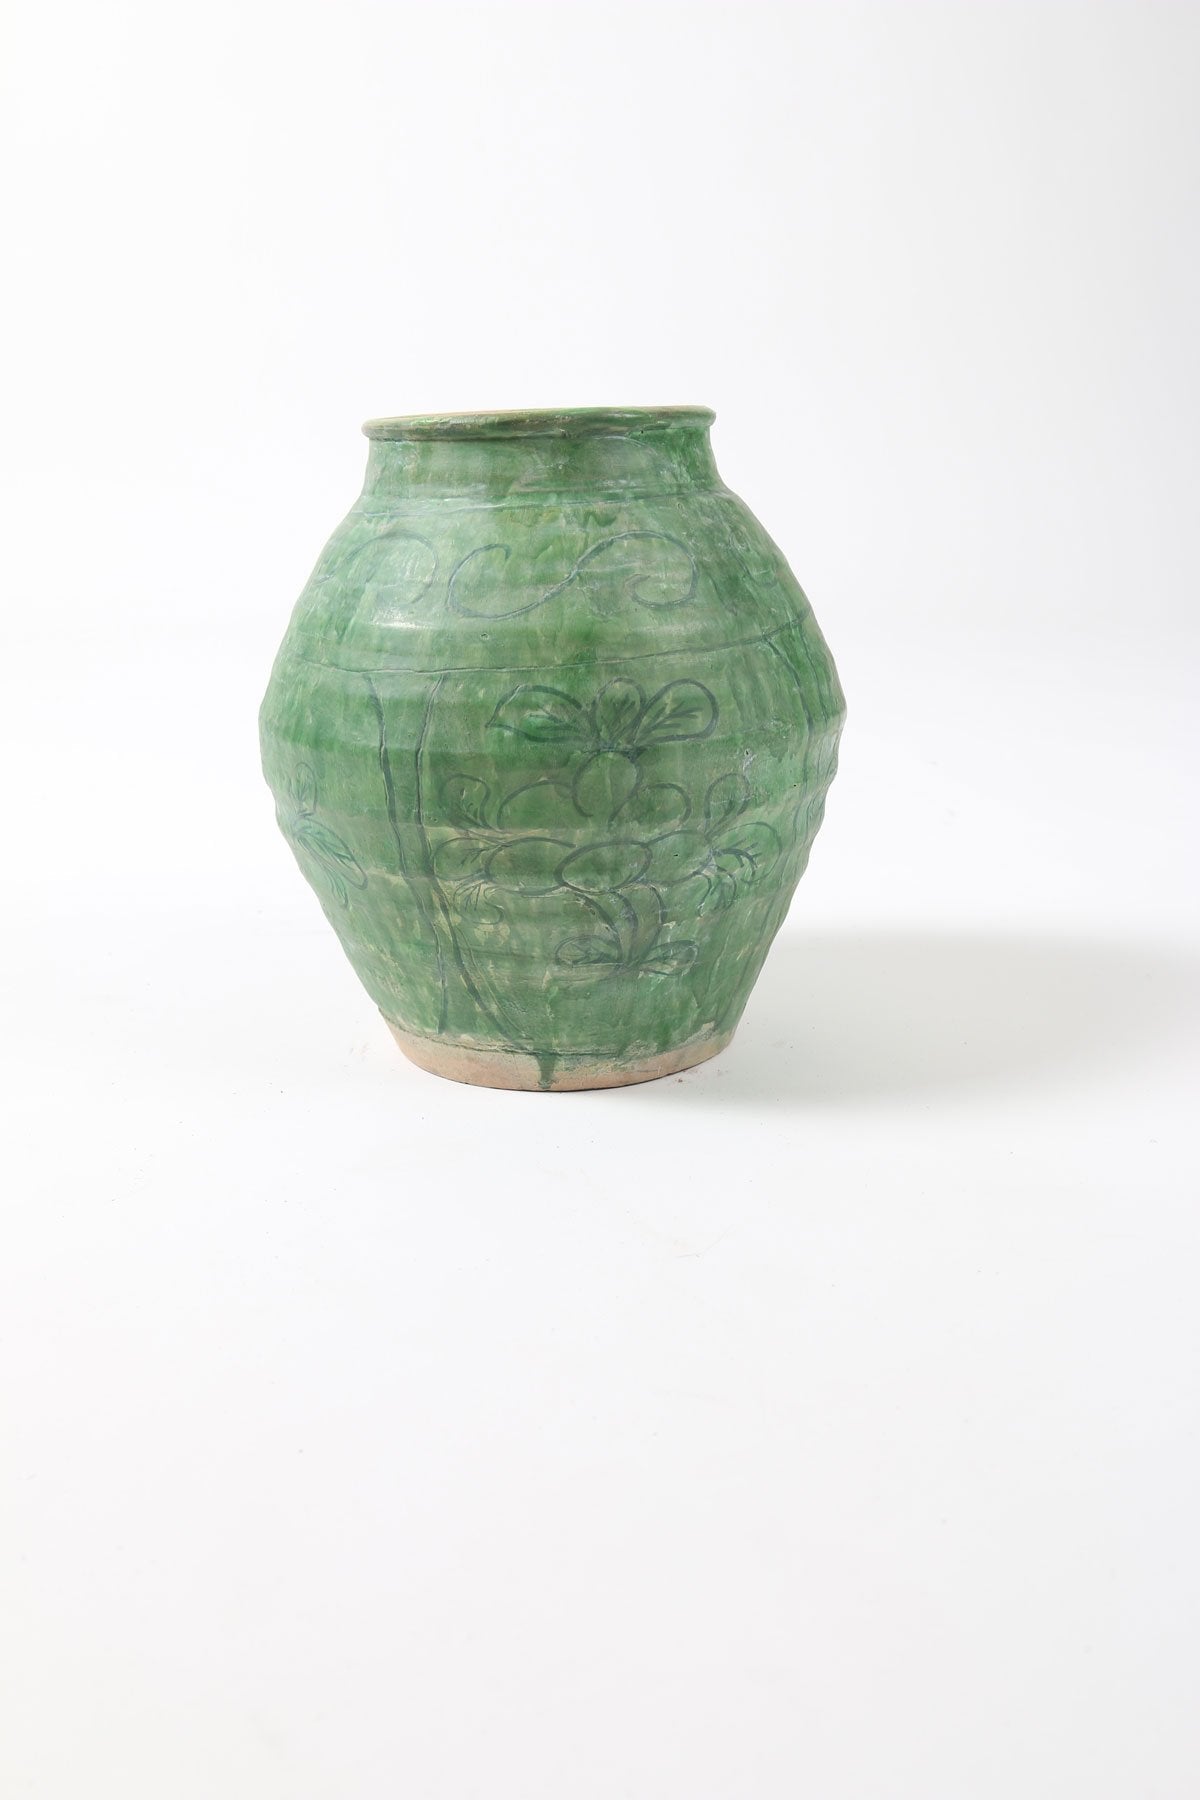 Vintage Green Patterned Pottery Vase